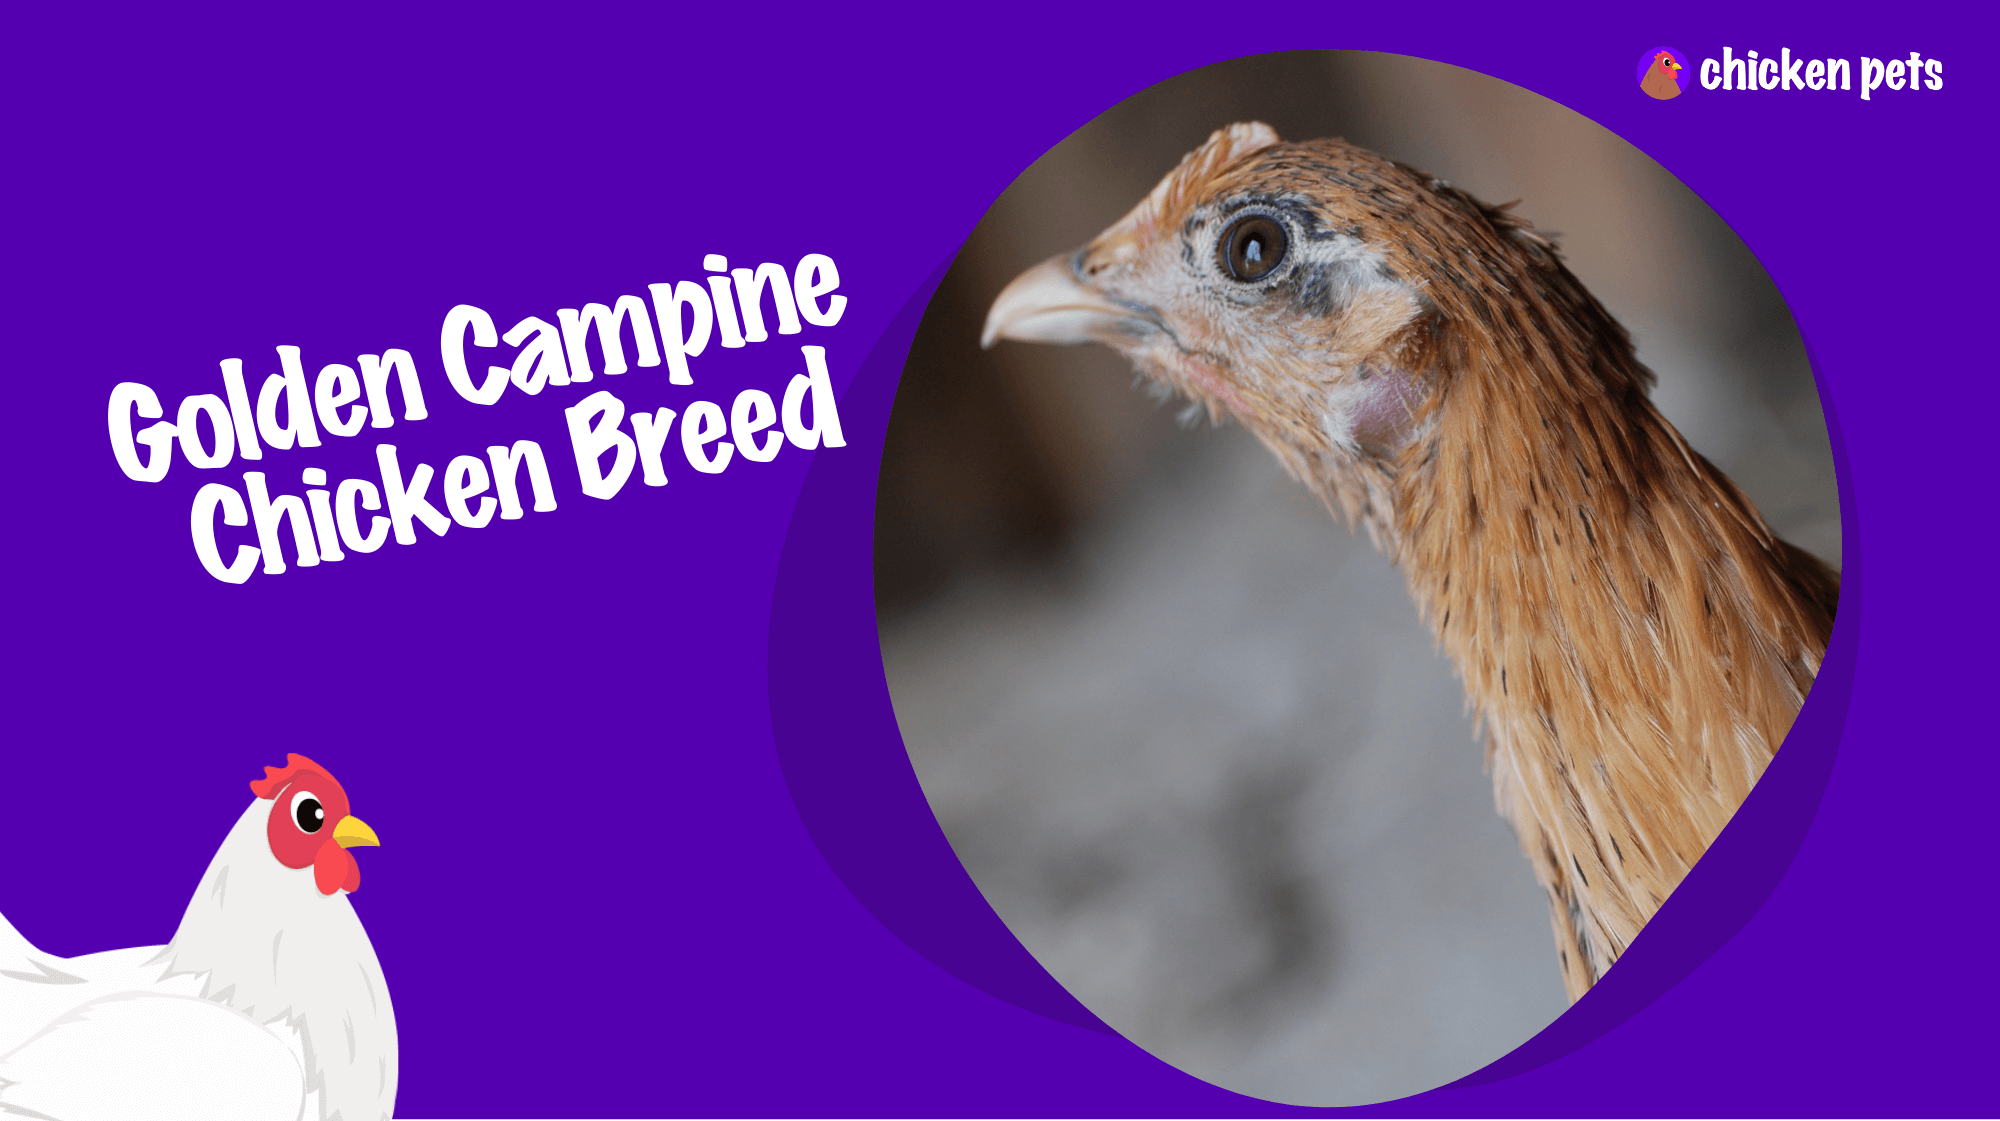 Golden Campine chicken breed